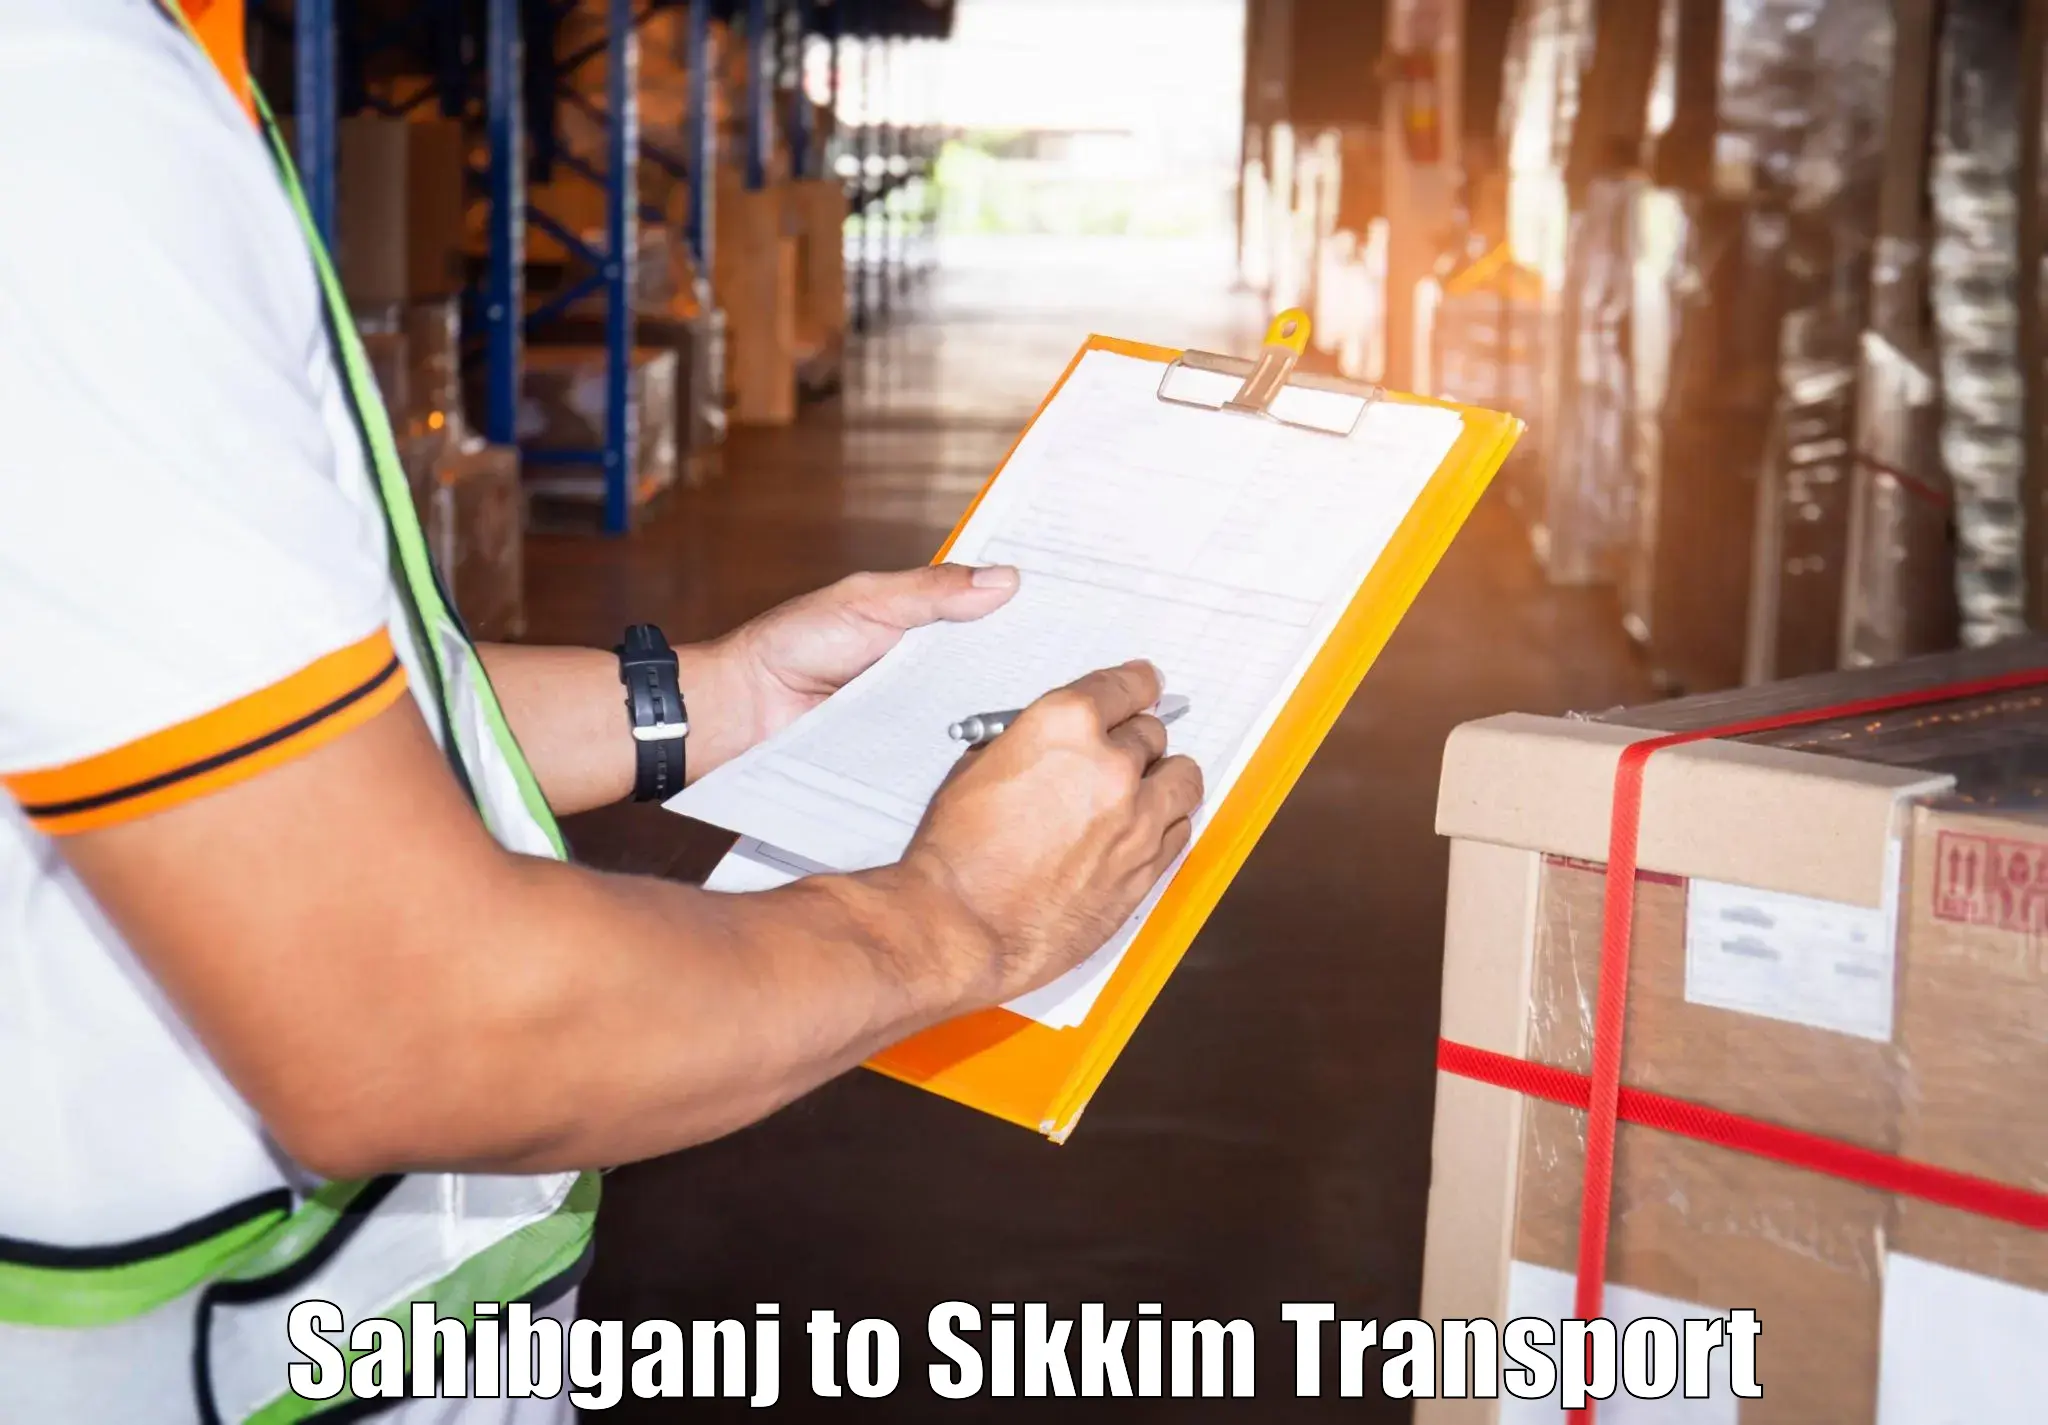 Transport in sharing Sahibganj to Gangtok